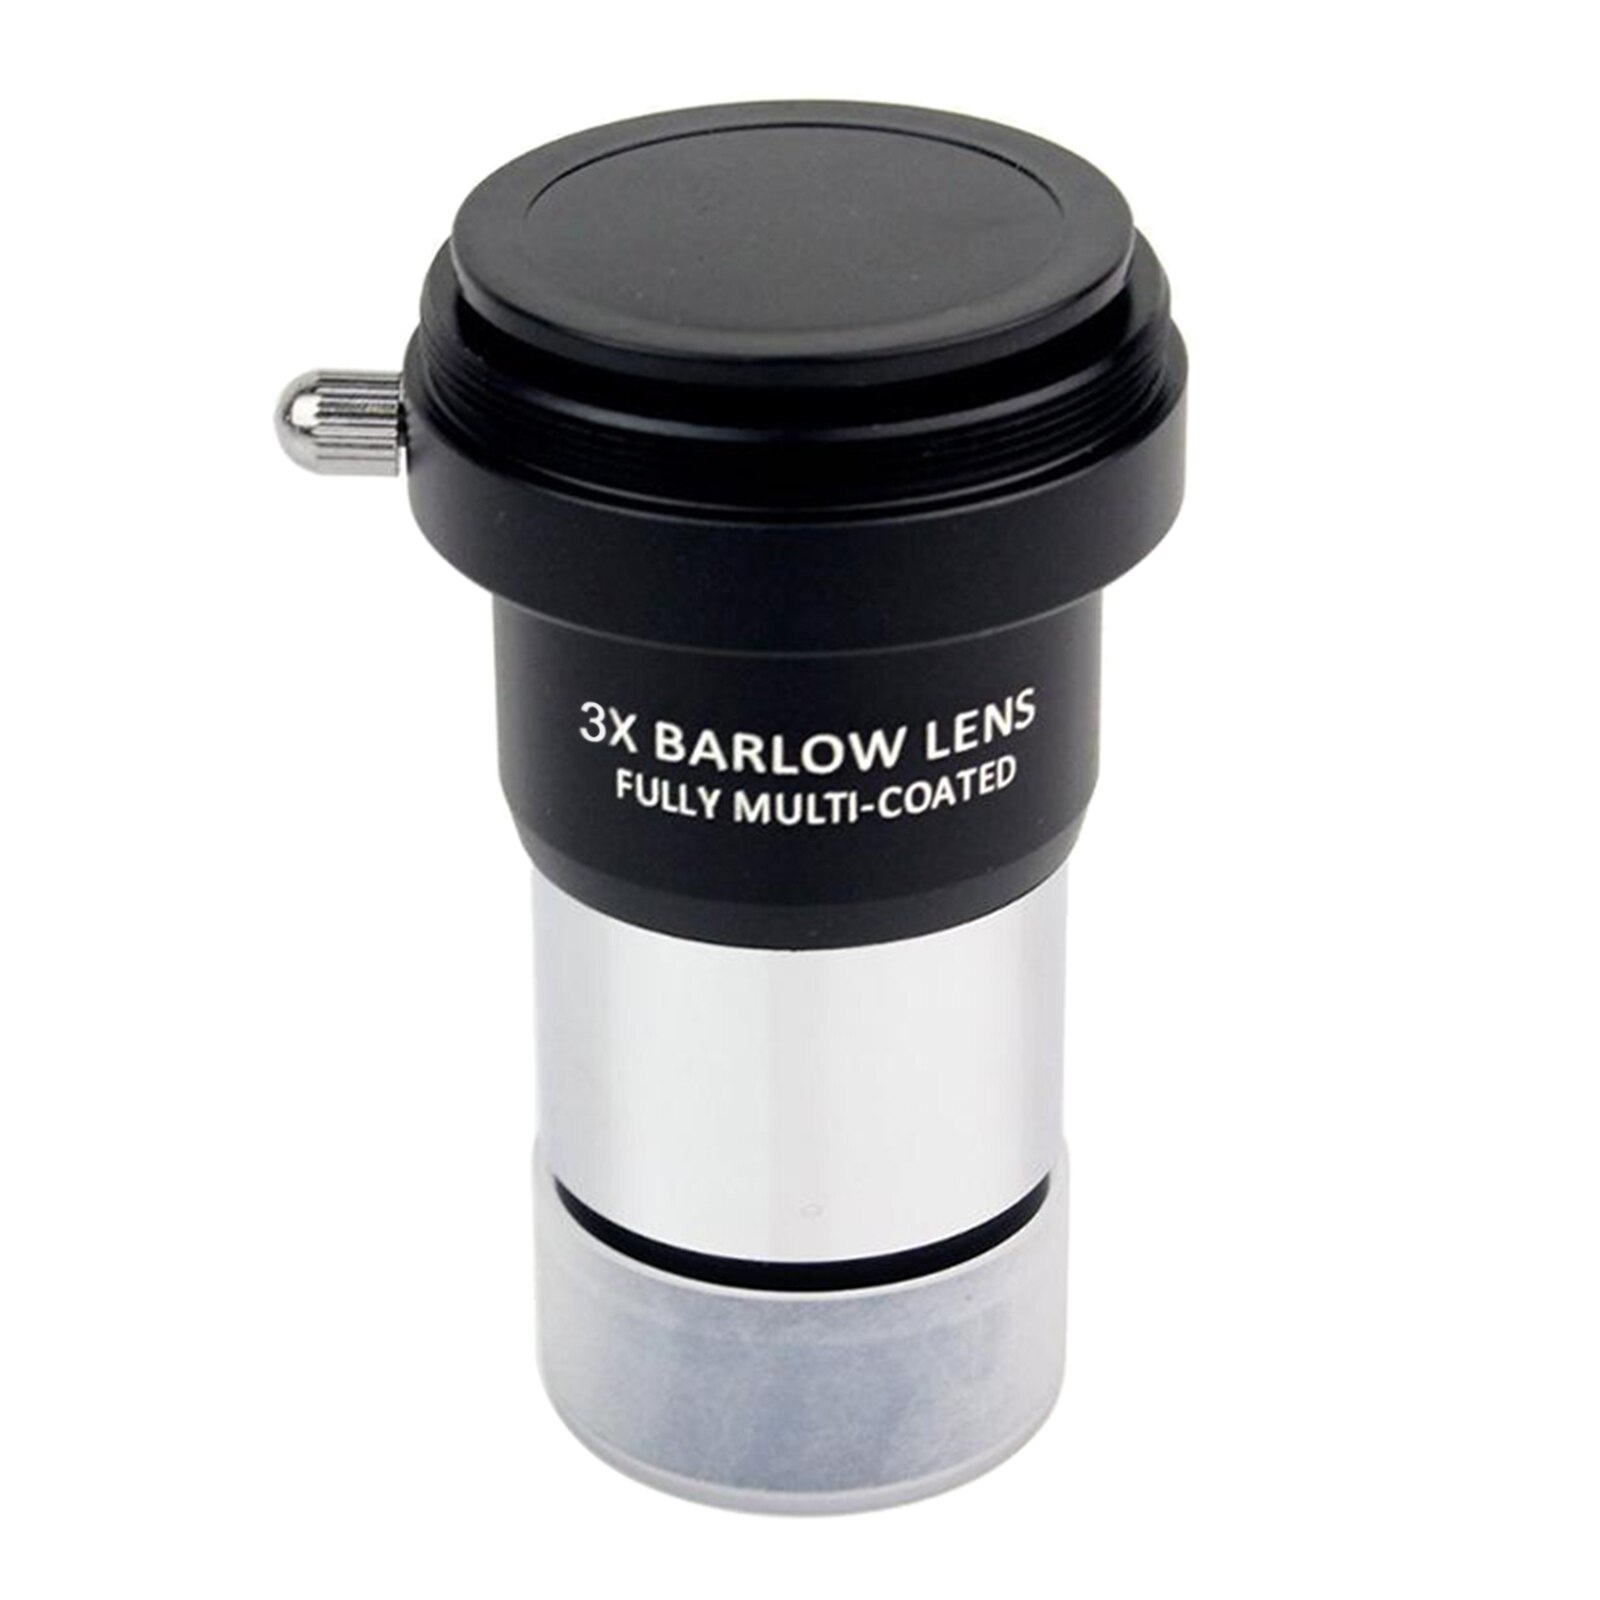 1.25Inch Barlow Lens, Full-Coated Oculair Van 3X High Power Vergroting Voor Astronomietelescoop Oculairs